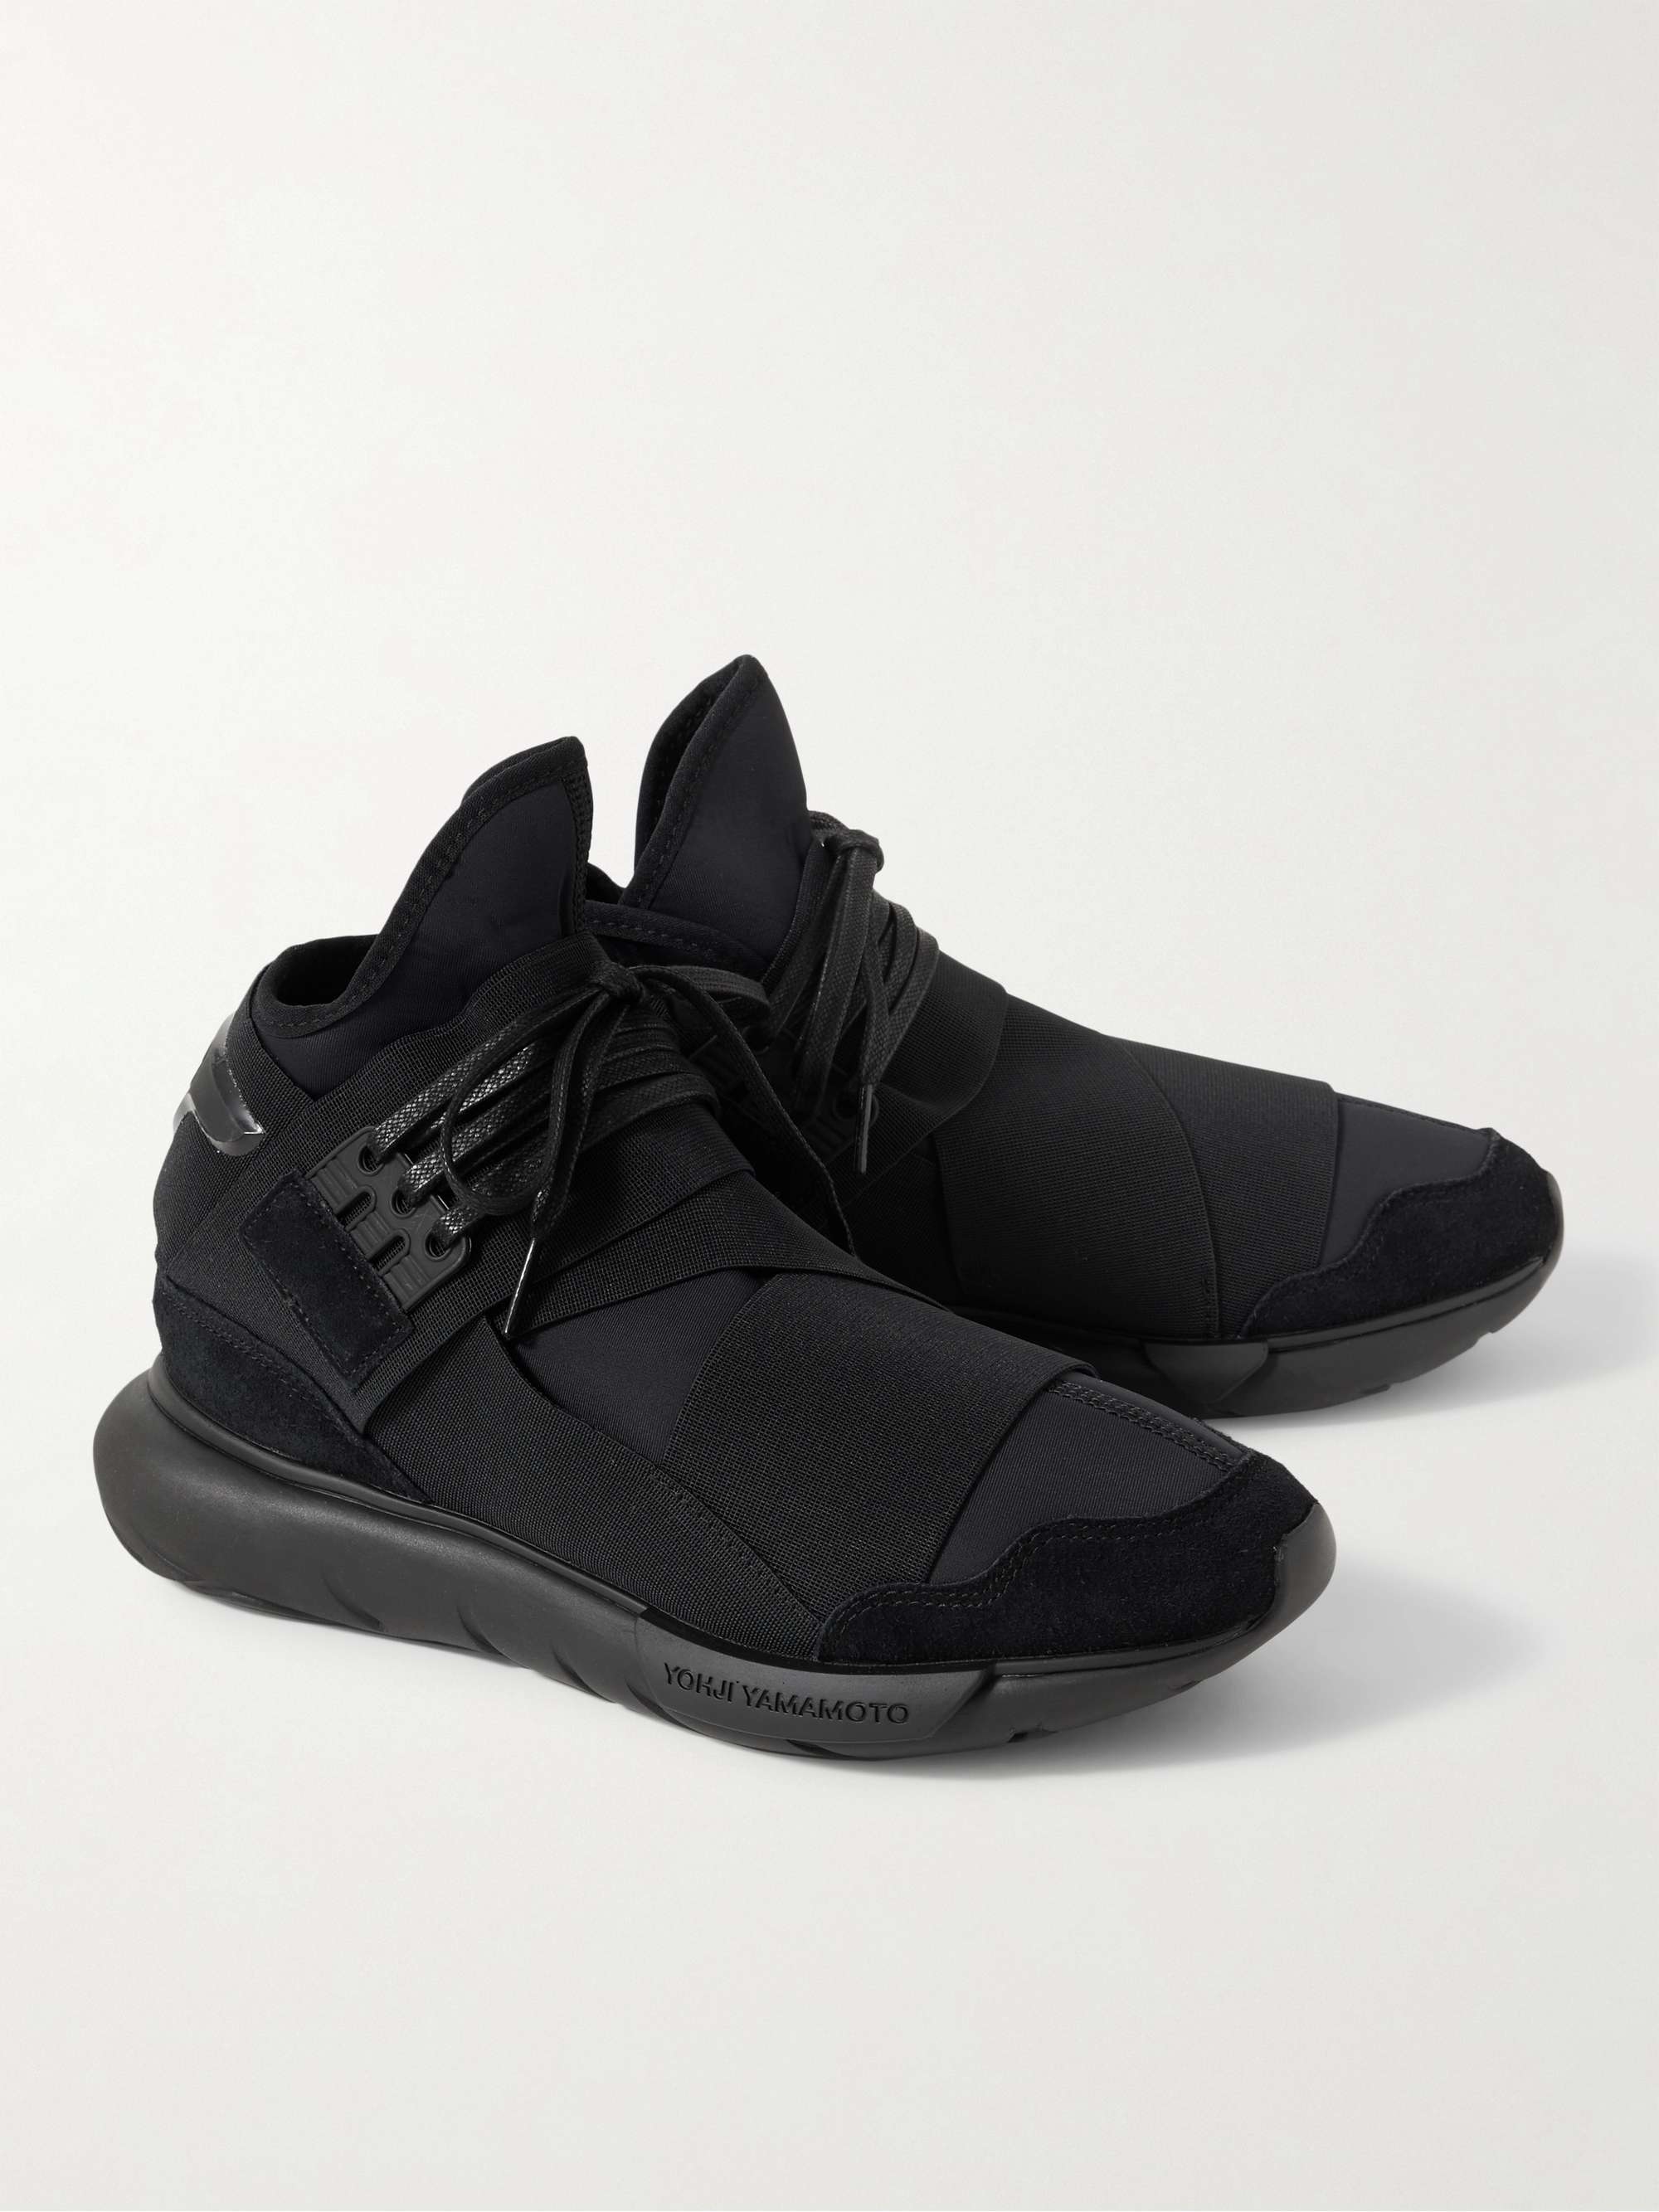 Black Qasa Suede-Trimmed Neoprene and Webbing High-Top Sneakers | Y-3 | MR  PORTER